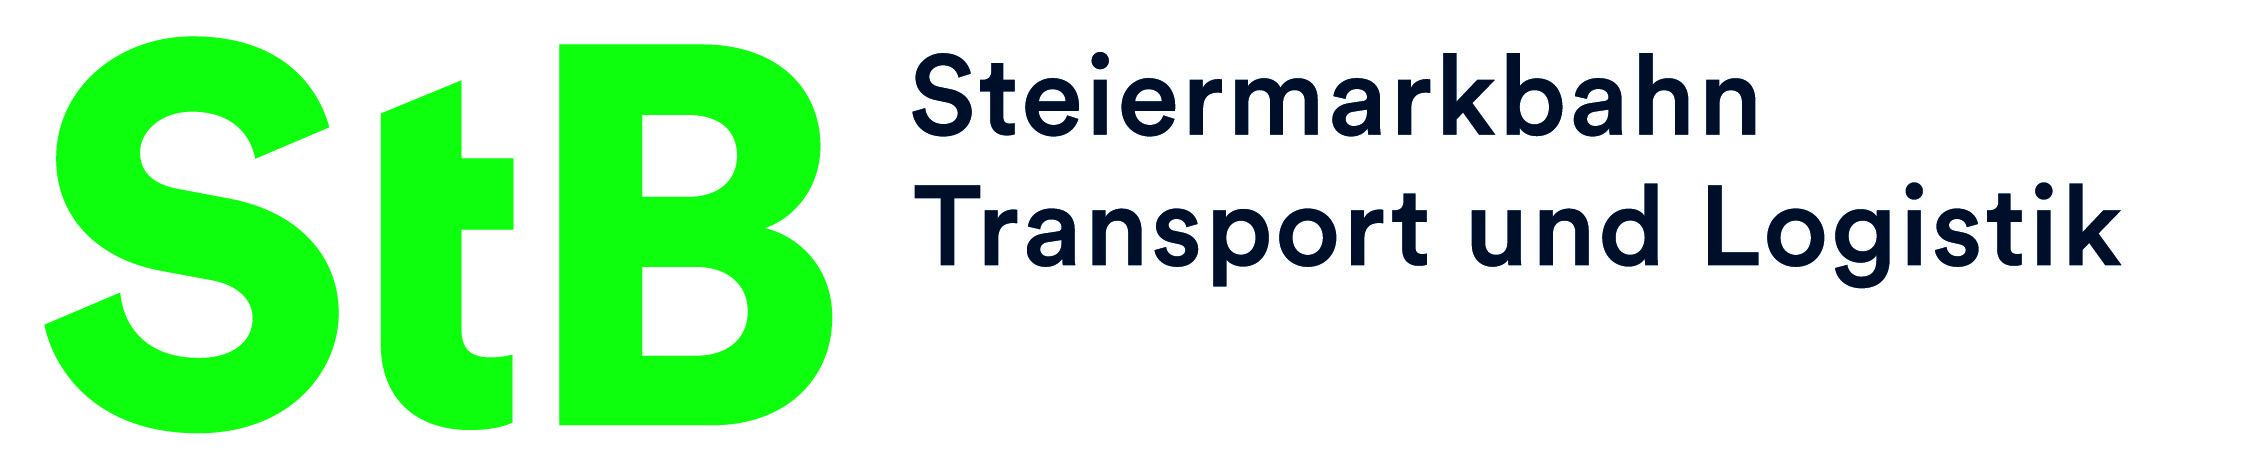 Jobs in der Steiermark bei den Steiermärkische Landesbahnen